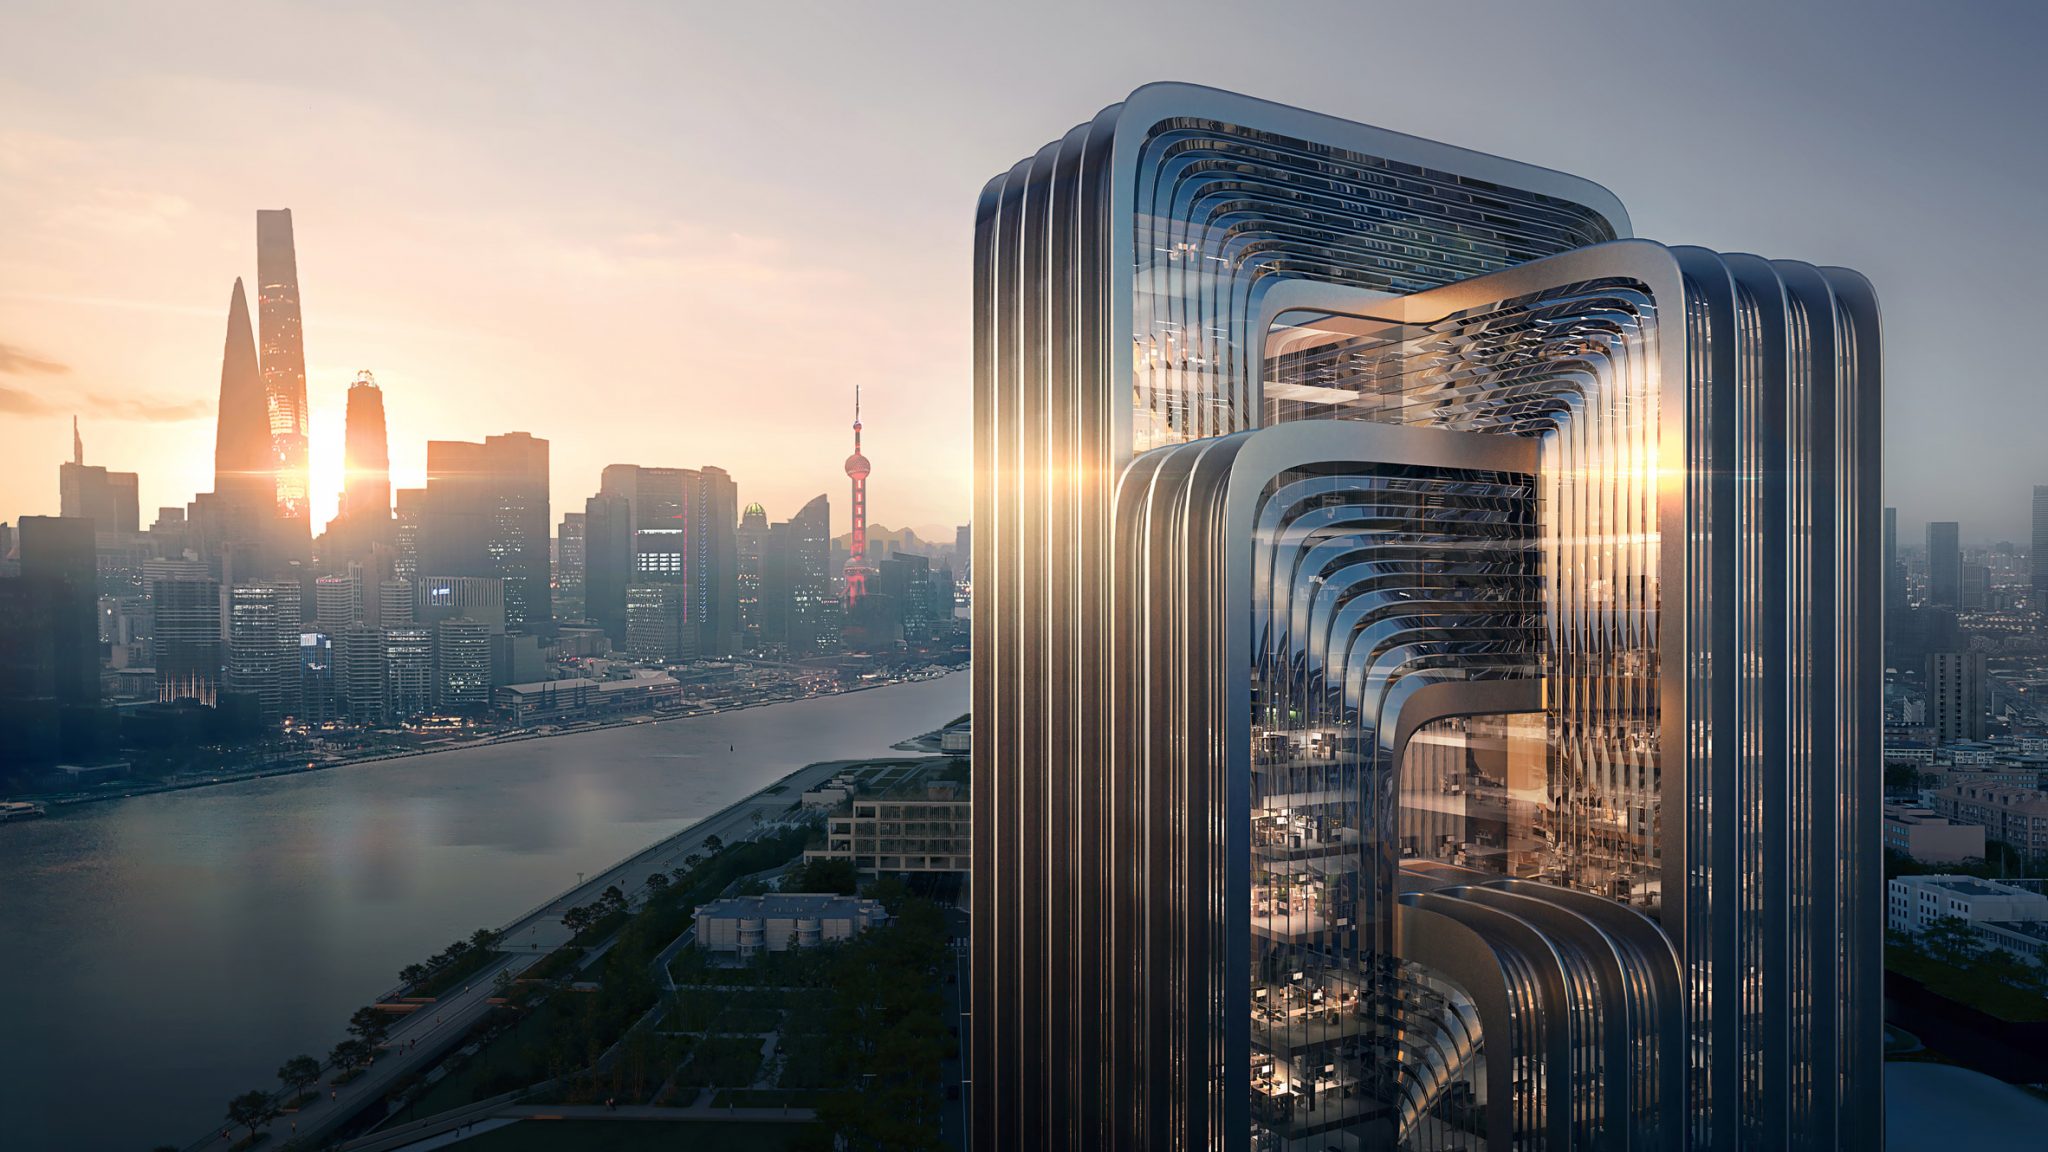 자하하디드건축, 상하이에 가장 친환경적 건물짓는다